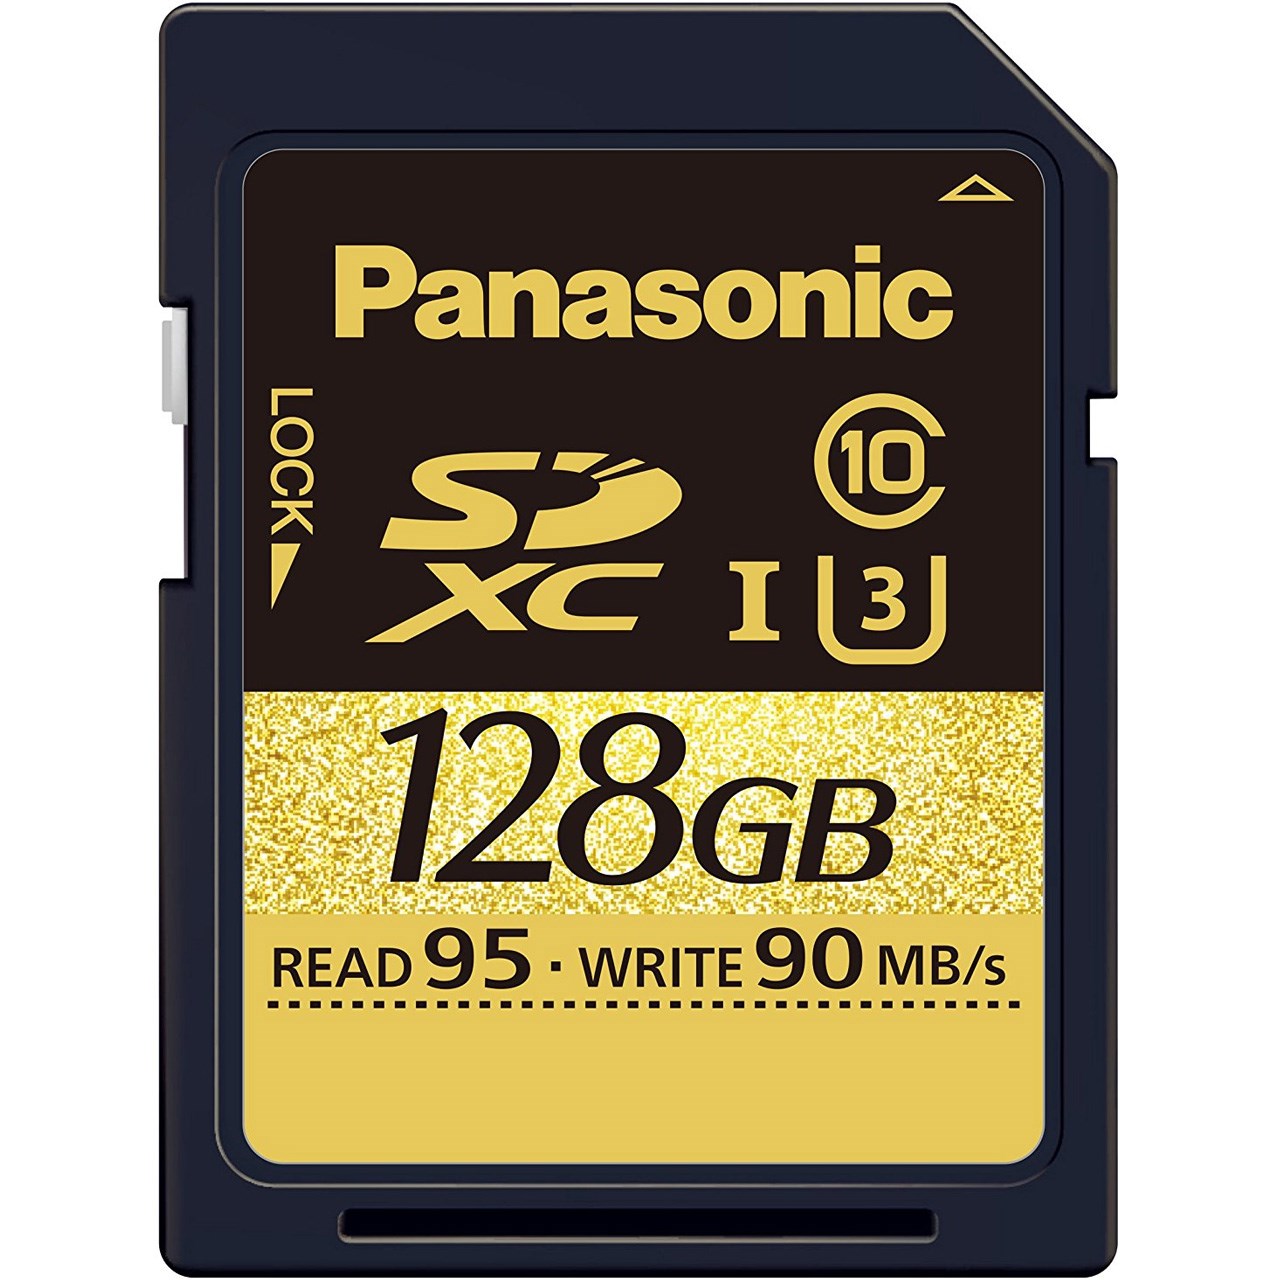 کارت حافظه SDXC پاناسونیک مدل RP-SDUD128AK کلاس 10 استاندارد UHS-I U3 سرعت 95MBps ظرفیت 128 گیگابایت